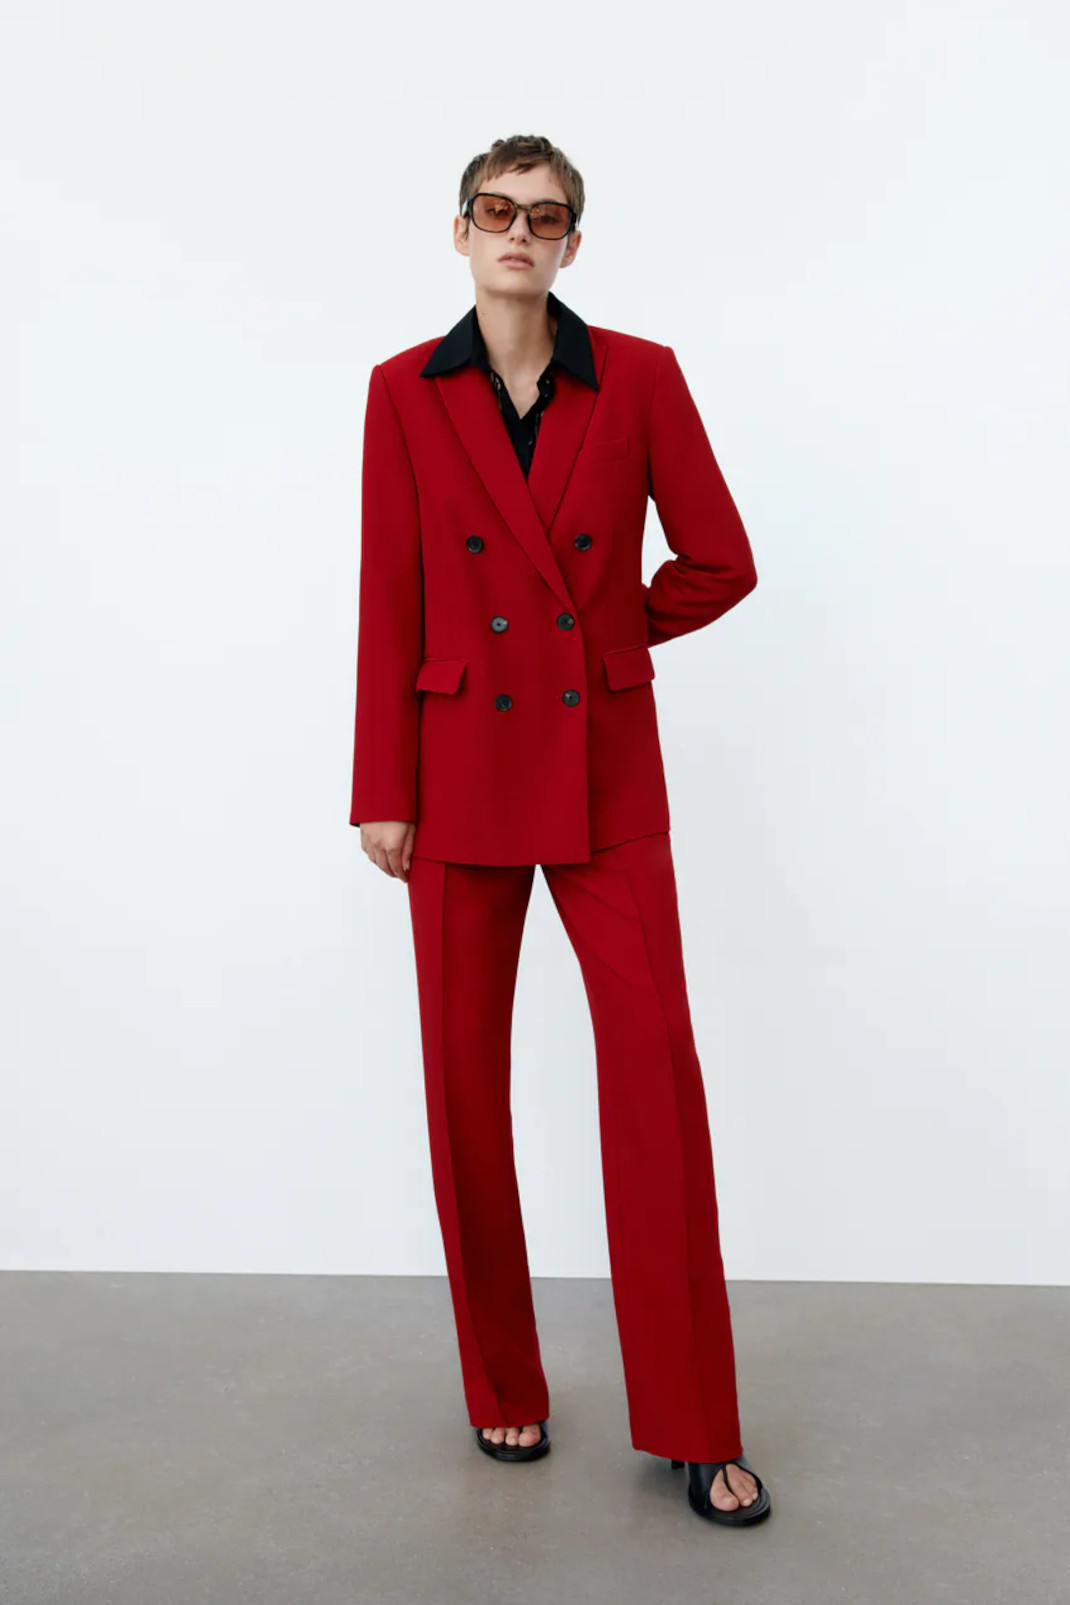 Η Ναταλία Γερμανού με Zara κόκκινο κοστούμι